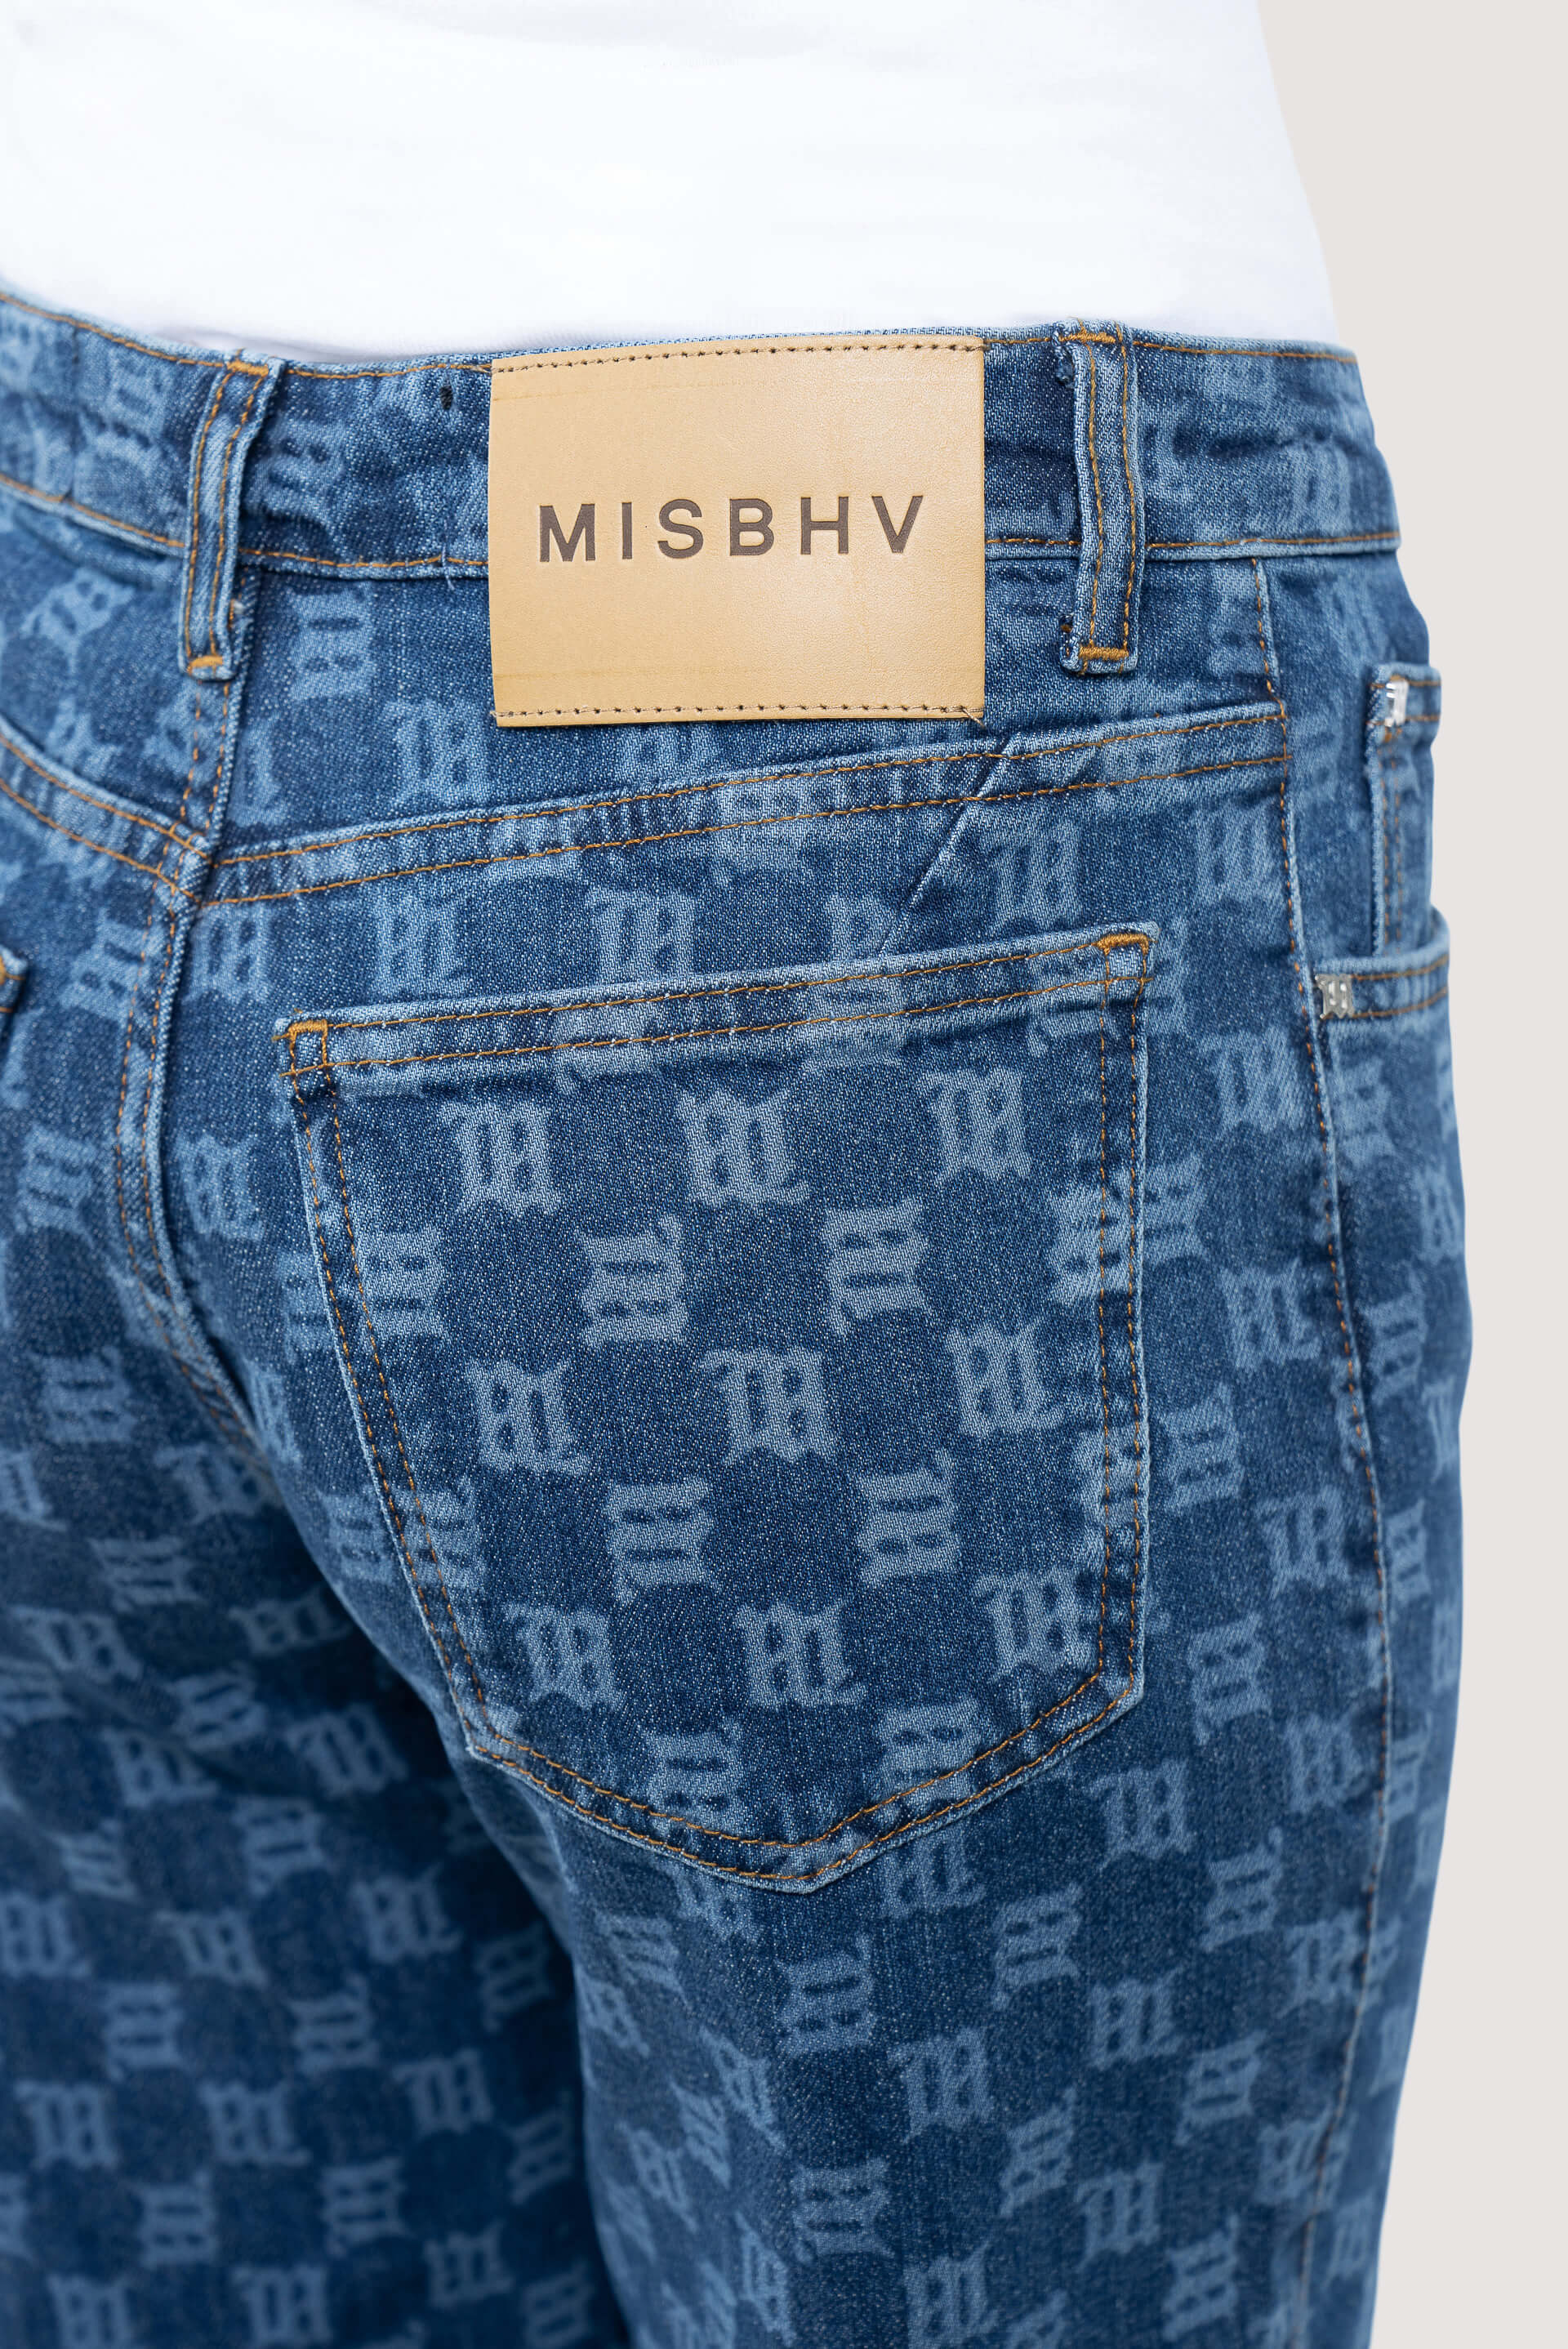 MISBHV Monogram High Waisted Jeans